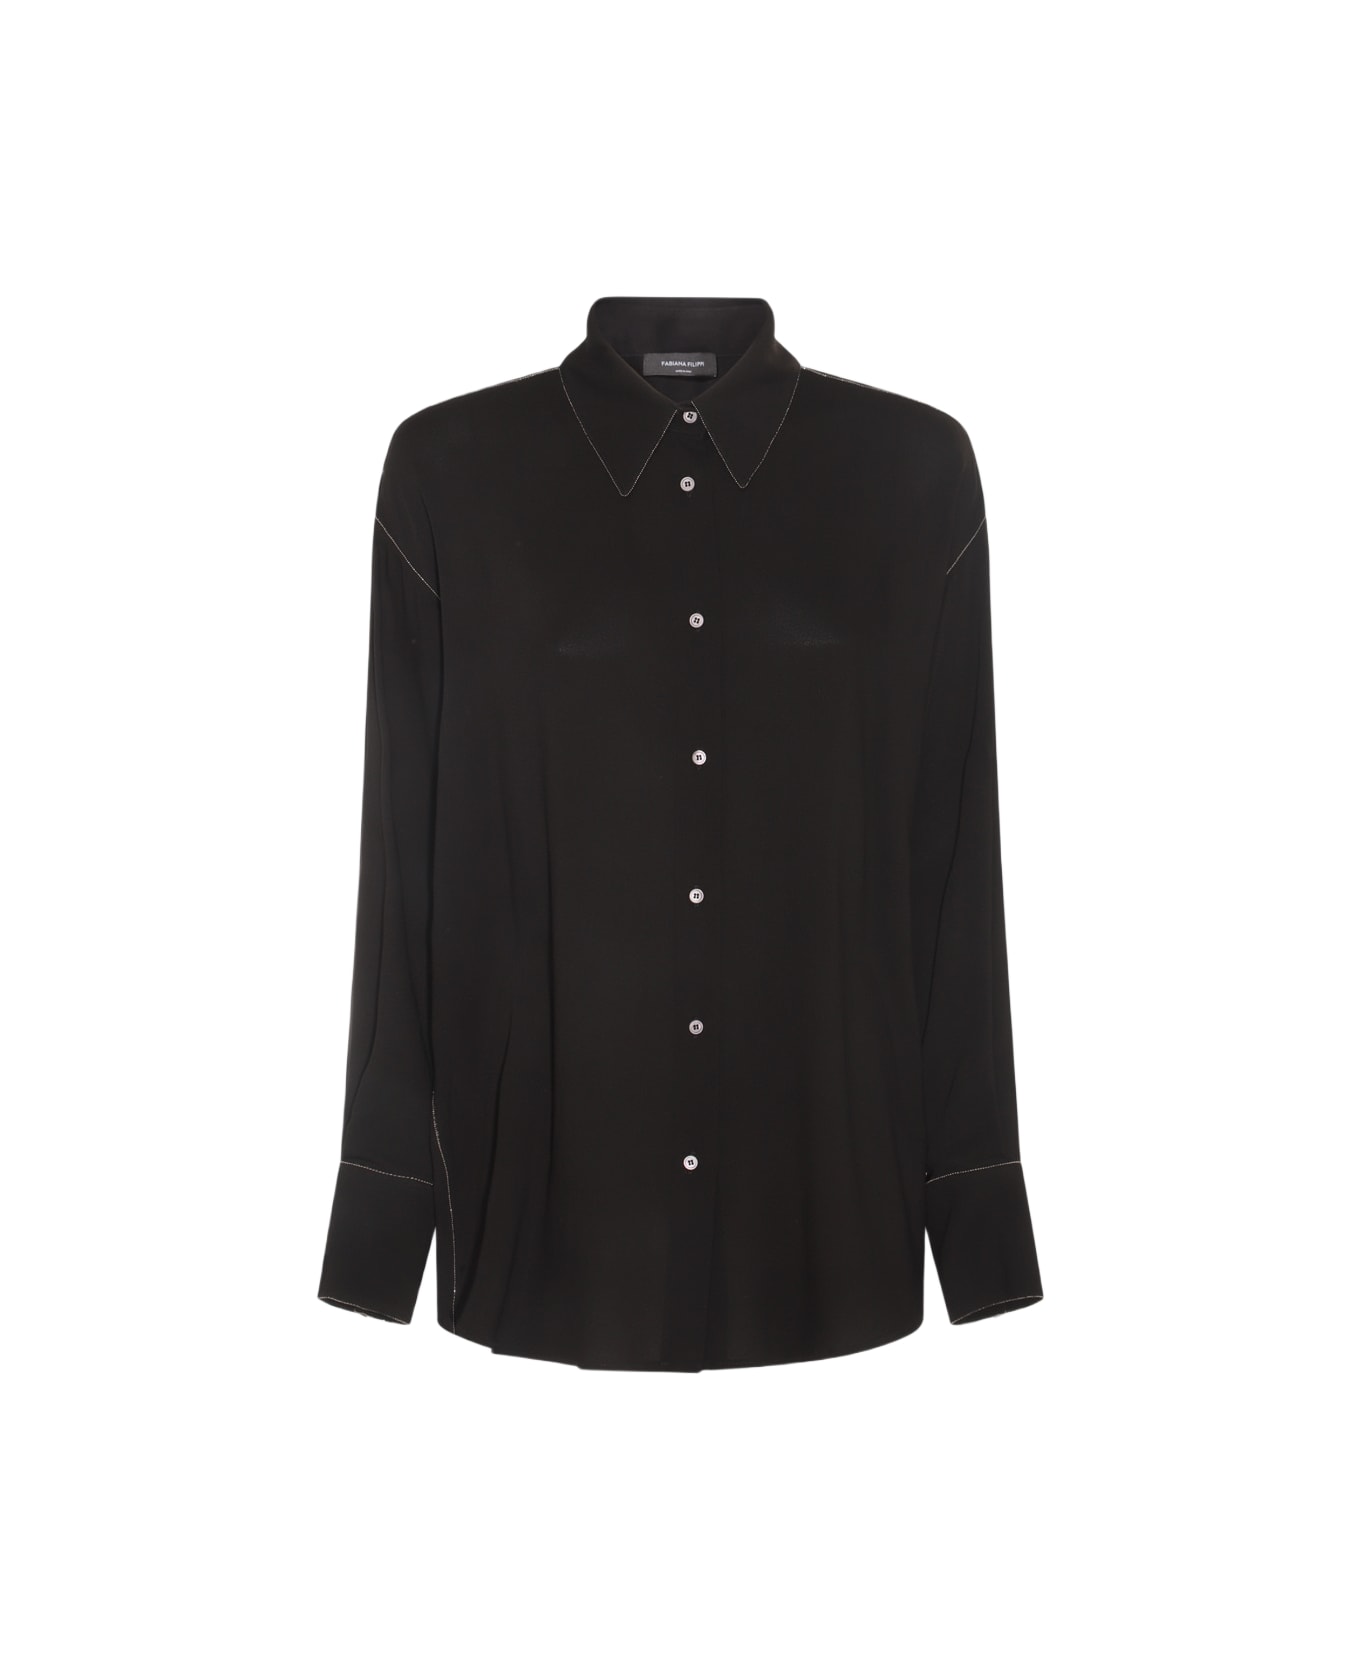 Fabiana Filippi Black Viscose Blend Shirt - Black シャツ